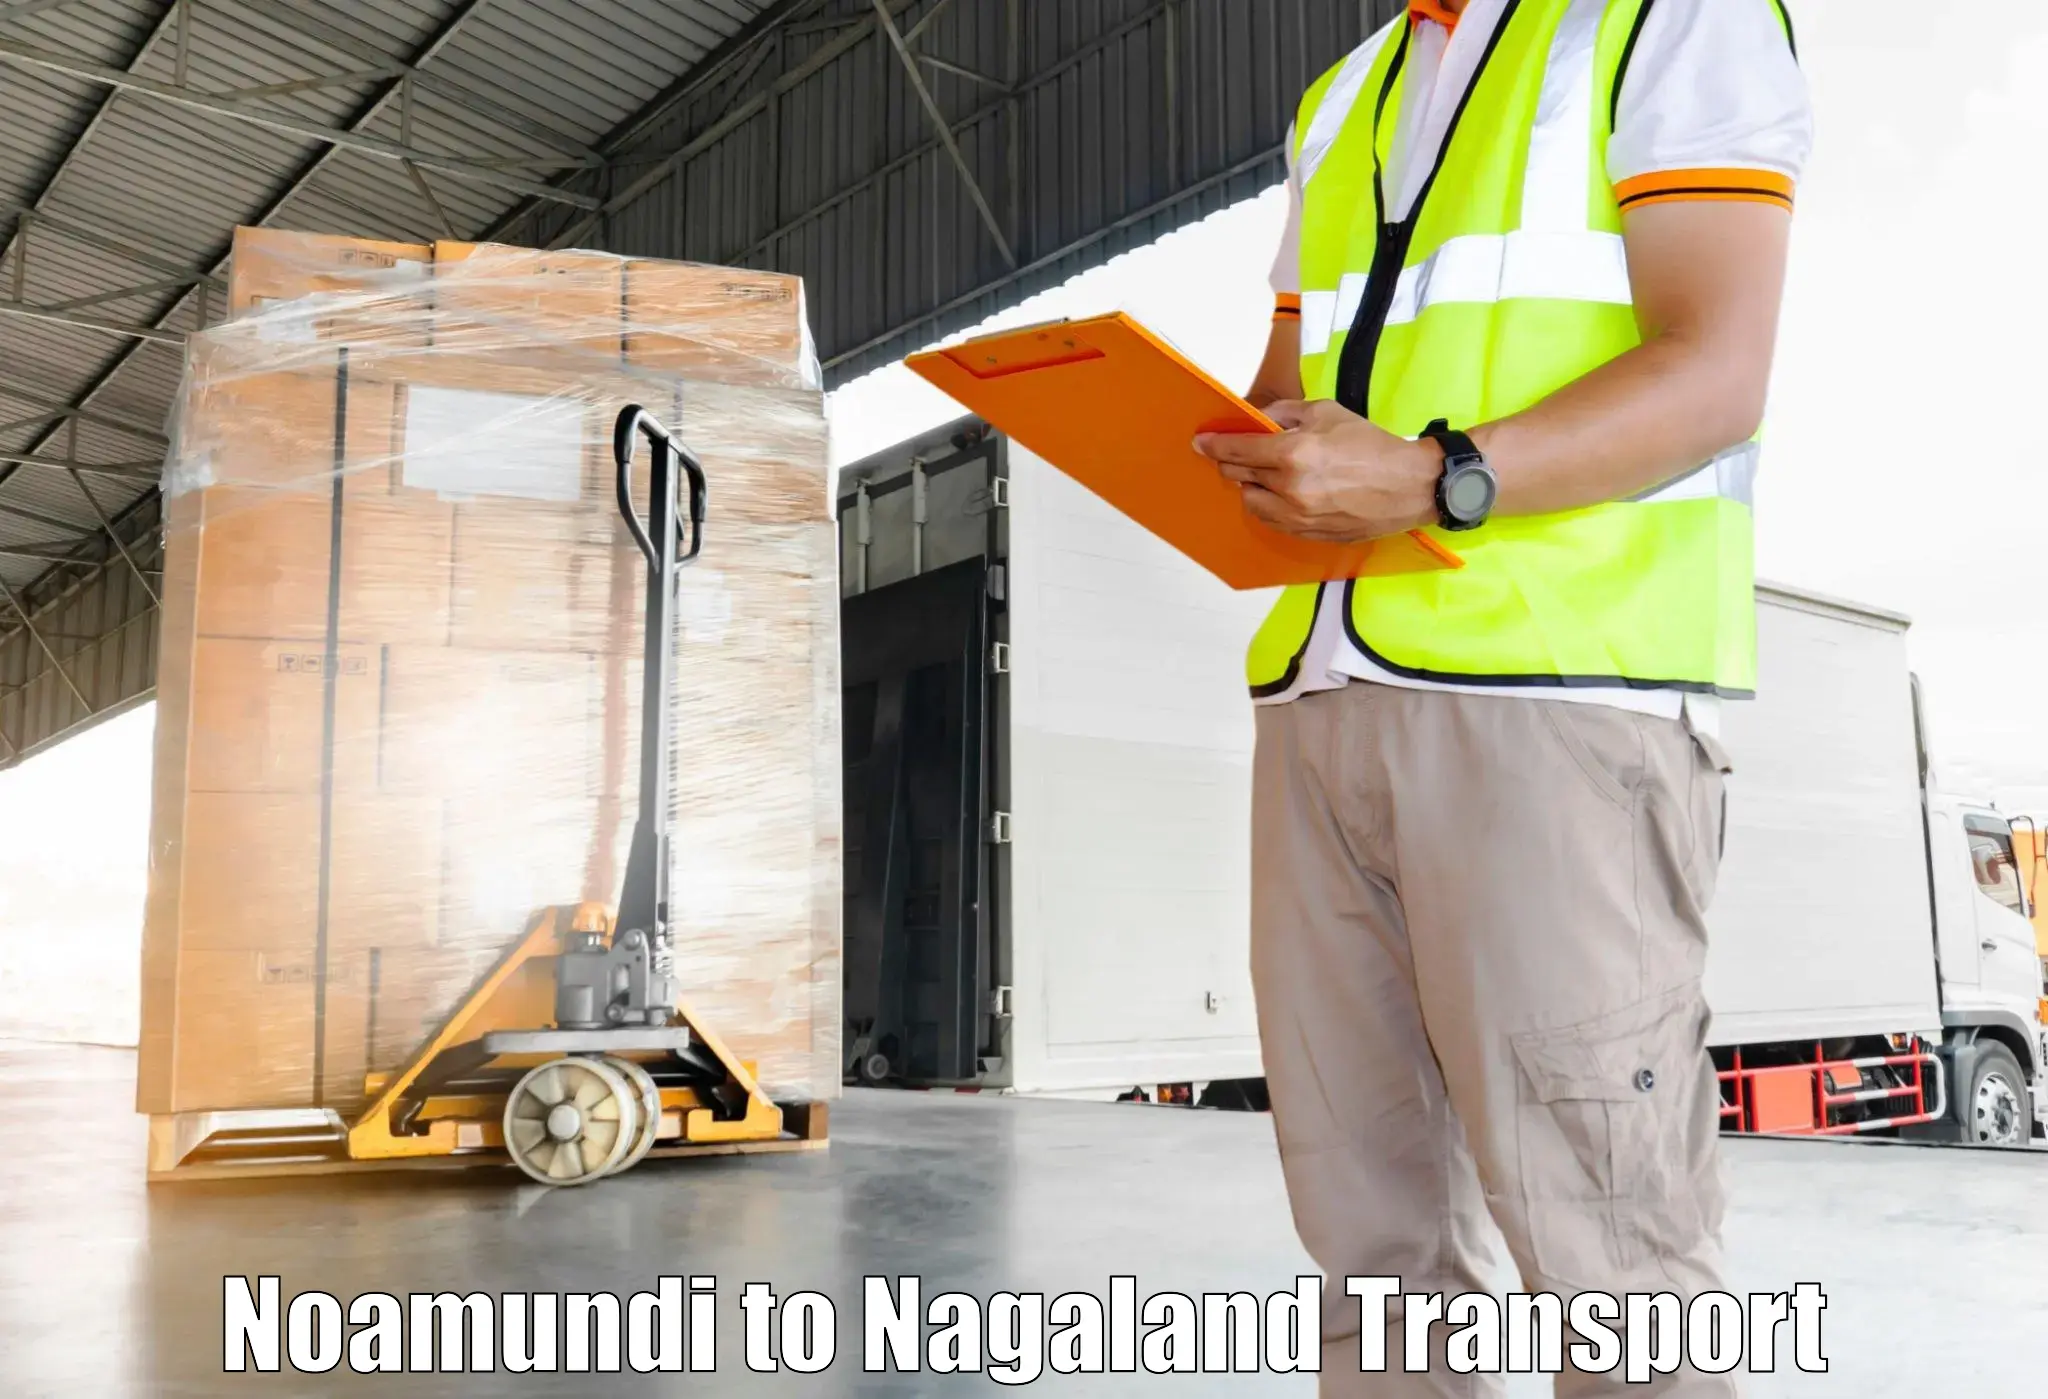 Daily parcel service transport Noamundi to NIT Nagaland